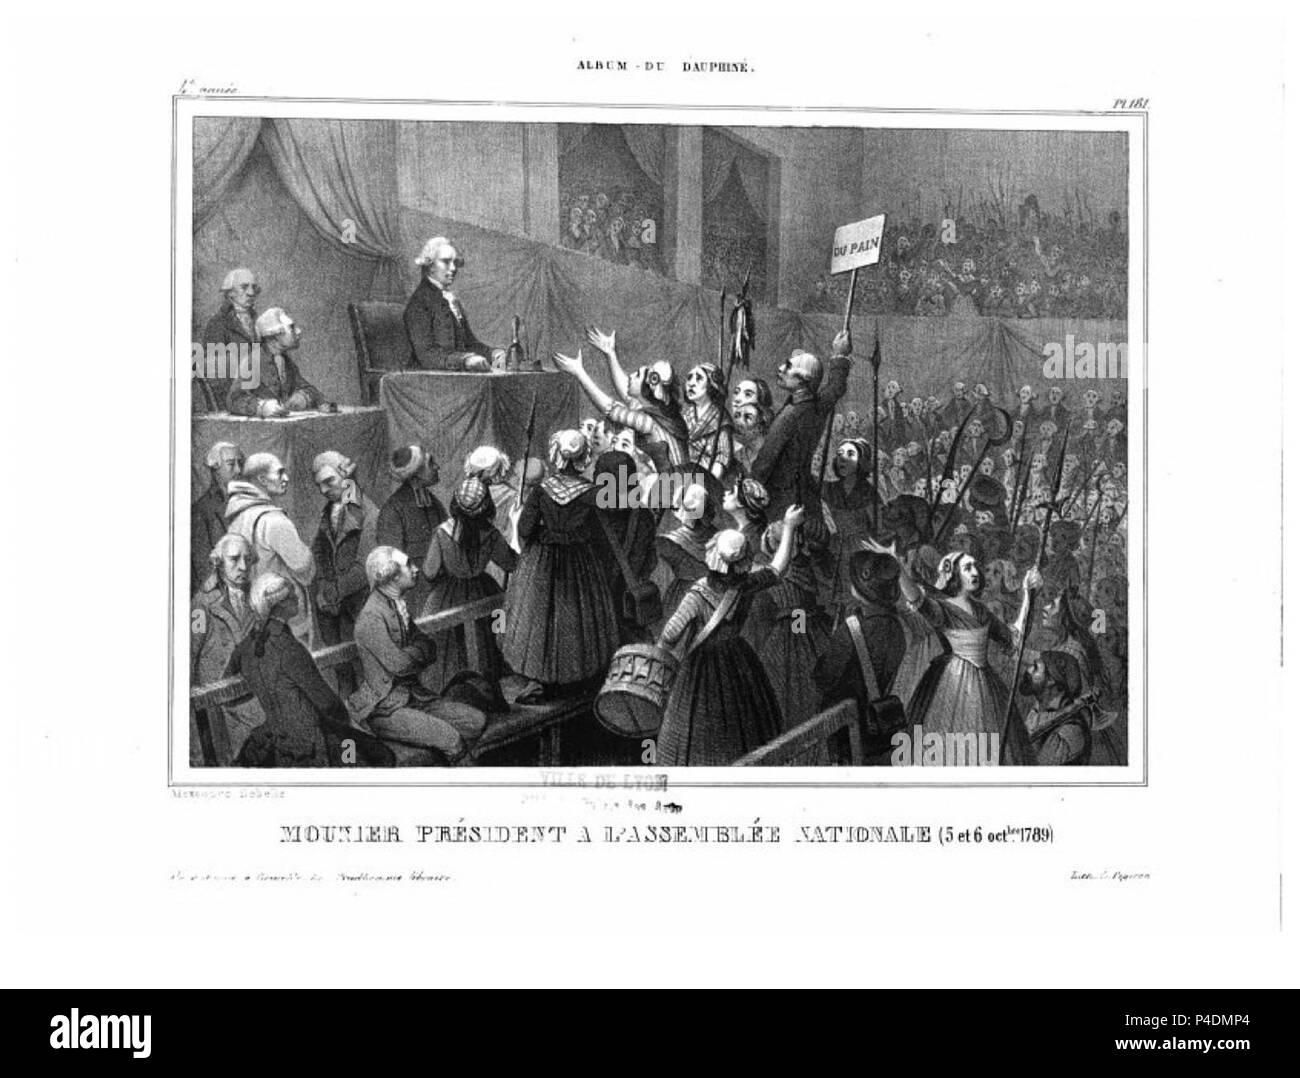 133 album dauphiné, Jean-Joseph Mounier président à l'assemblée nationale,  5 et 6 oct 1789, by AD Stock Photo - Alamy